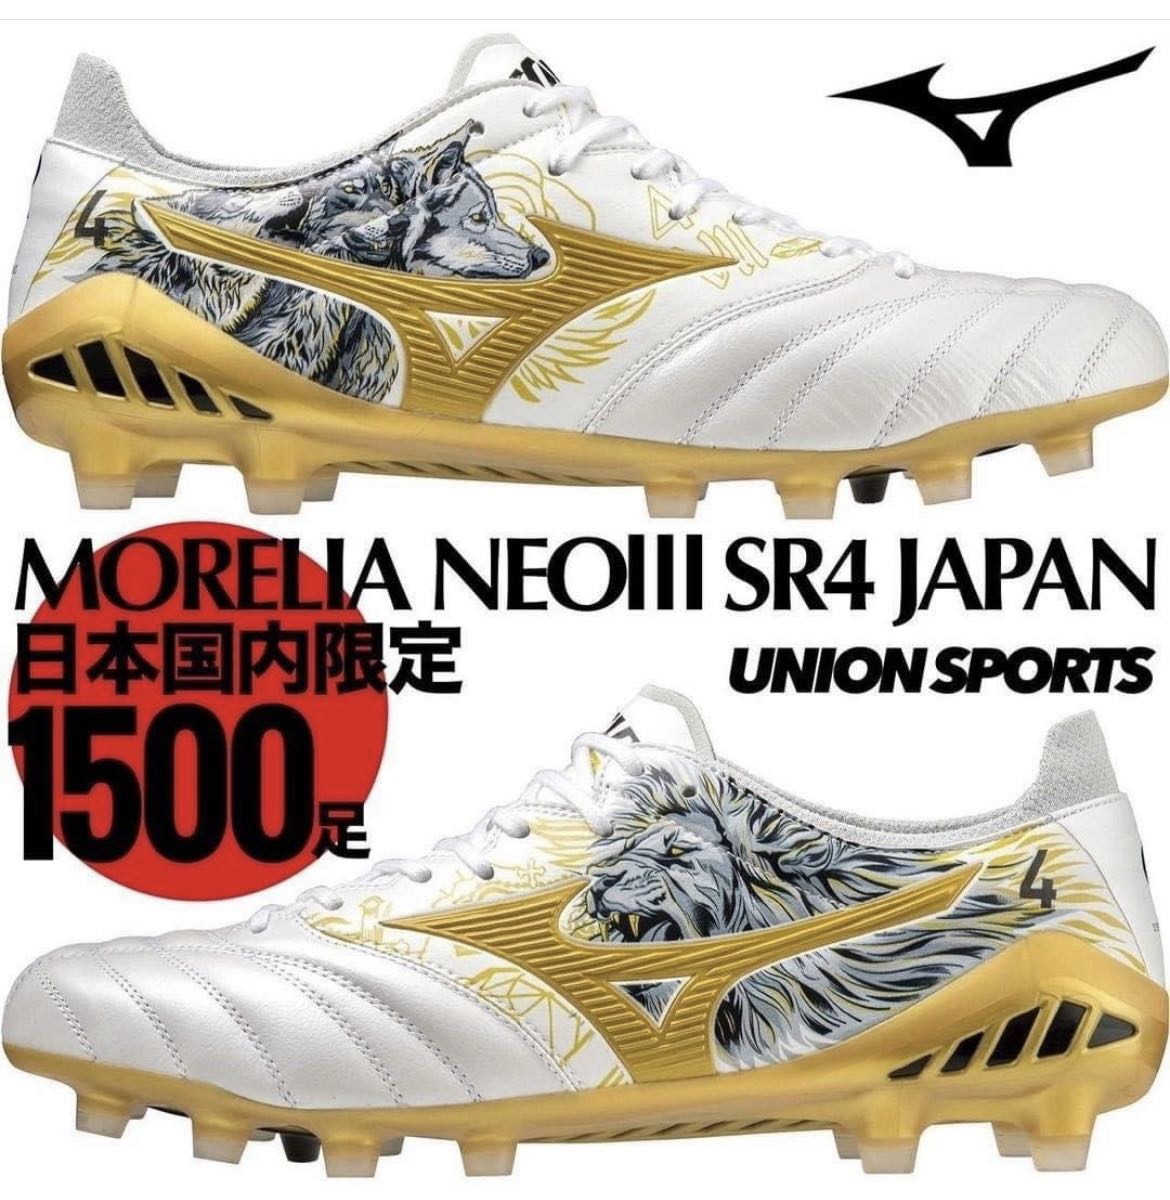 MIZUNO MORELIA NEO III SR4 JAPAN 草地足球鞋全球限量特別版, 運動